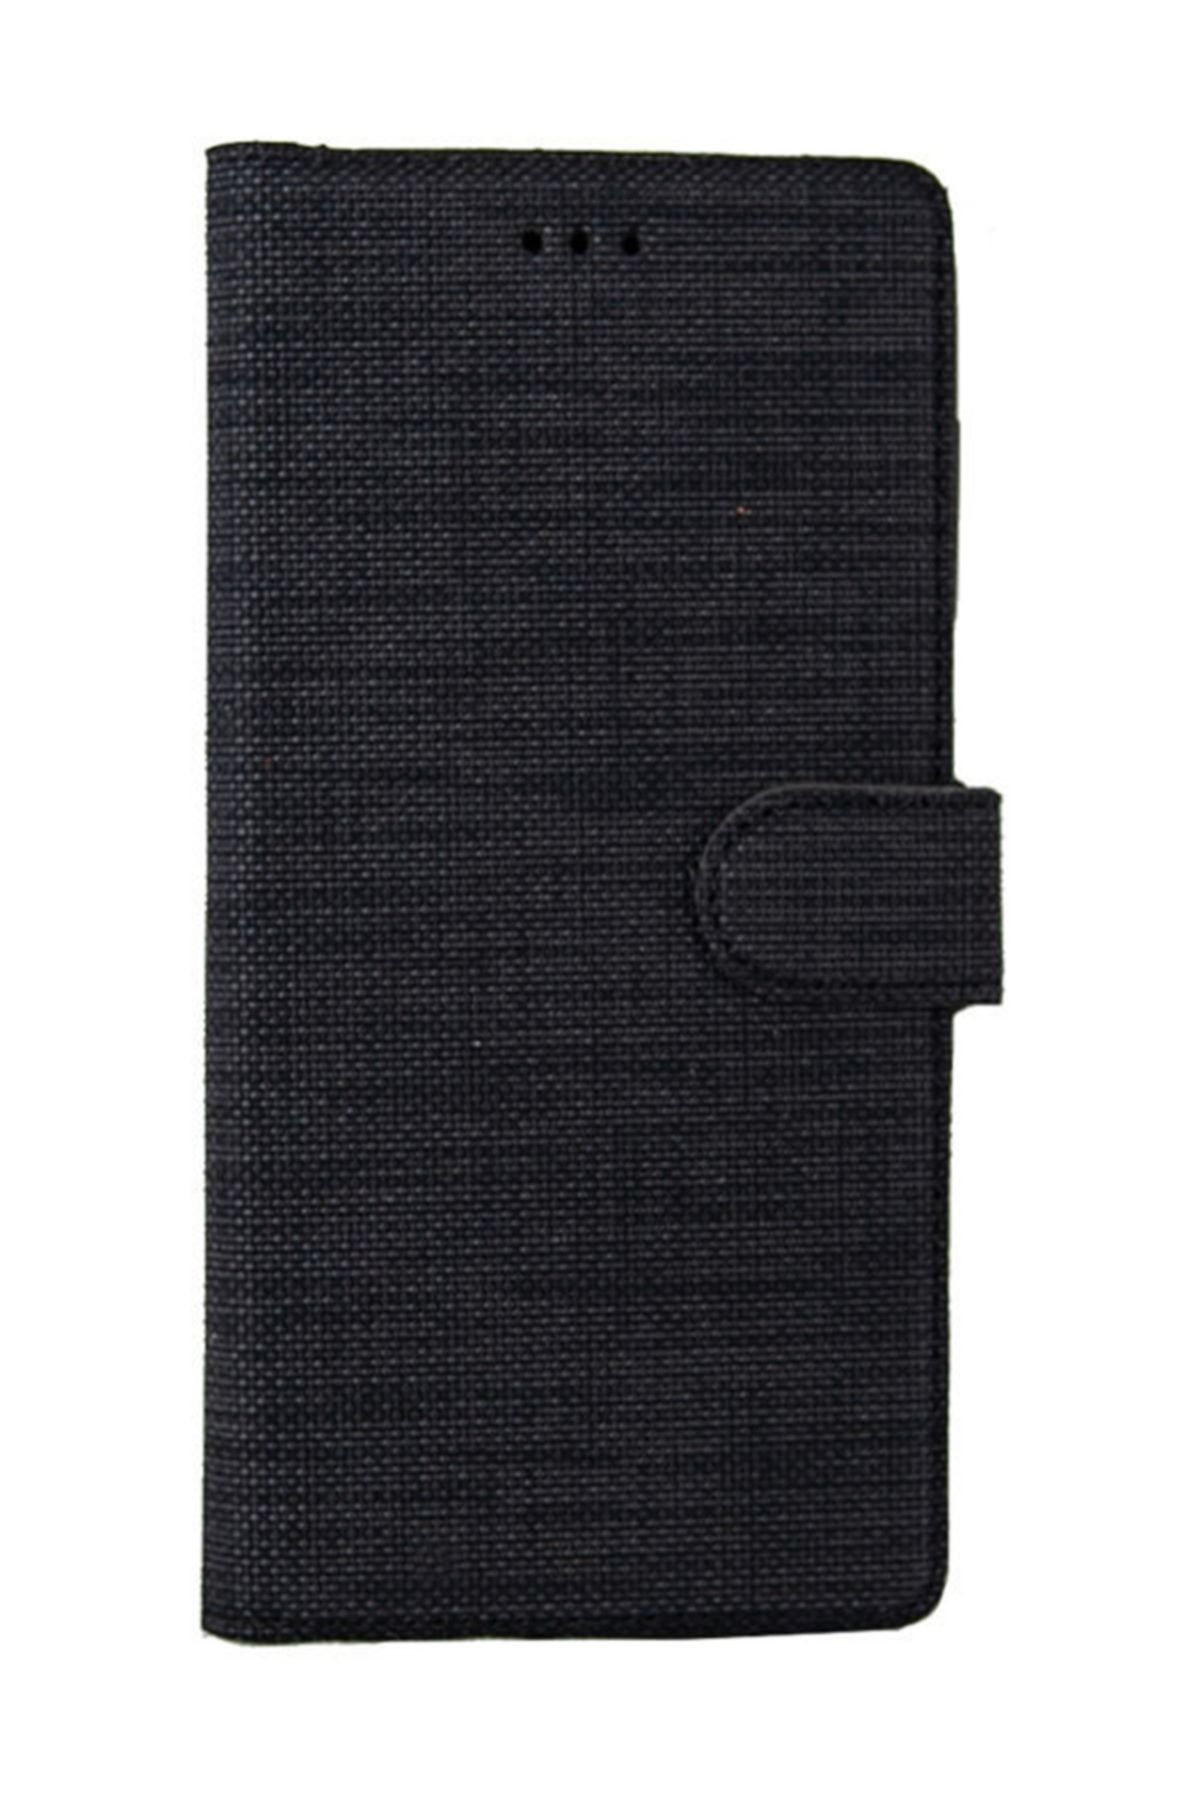 Coverzone Samsung Galaxy Note 4 Standlı Kartvizitli Ve Para Gözlü Kumaş Desen Mhm Siyah